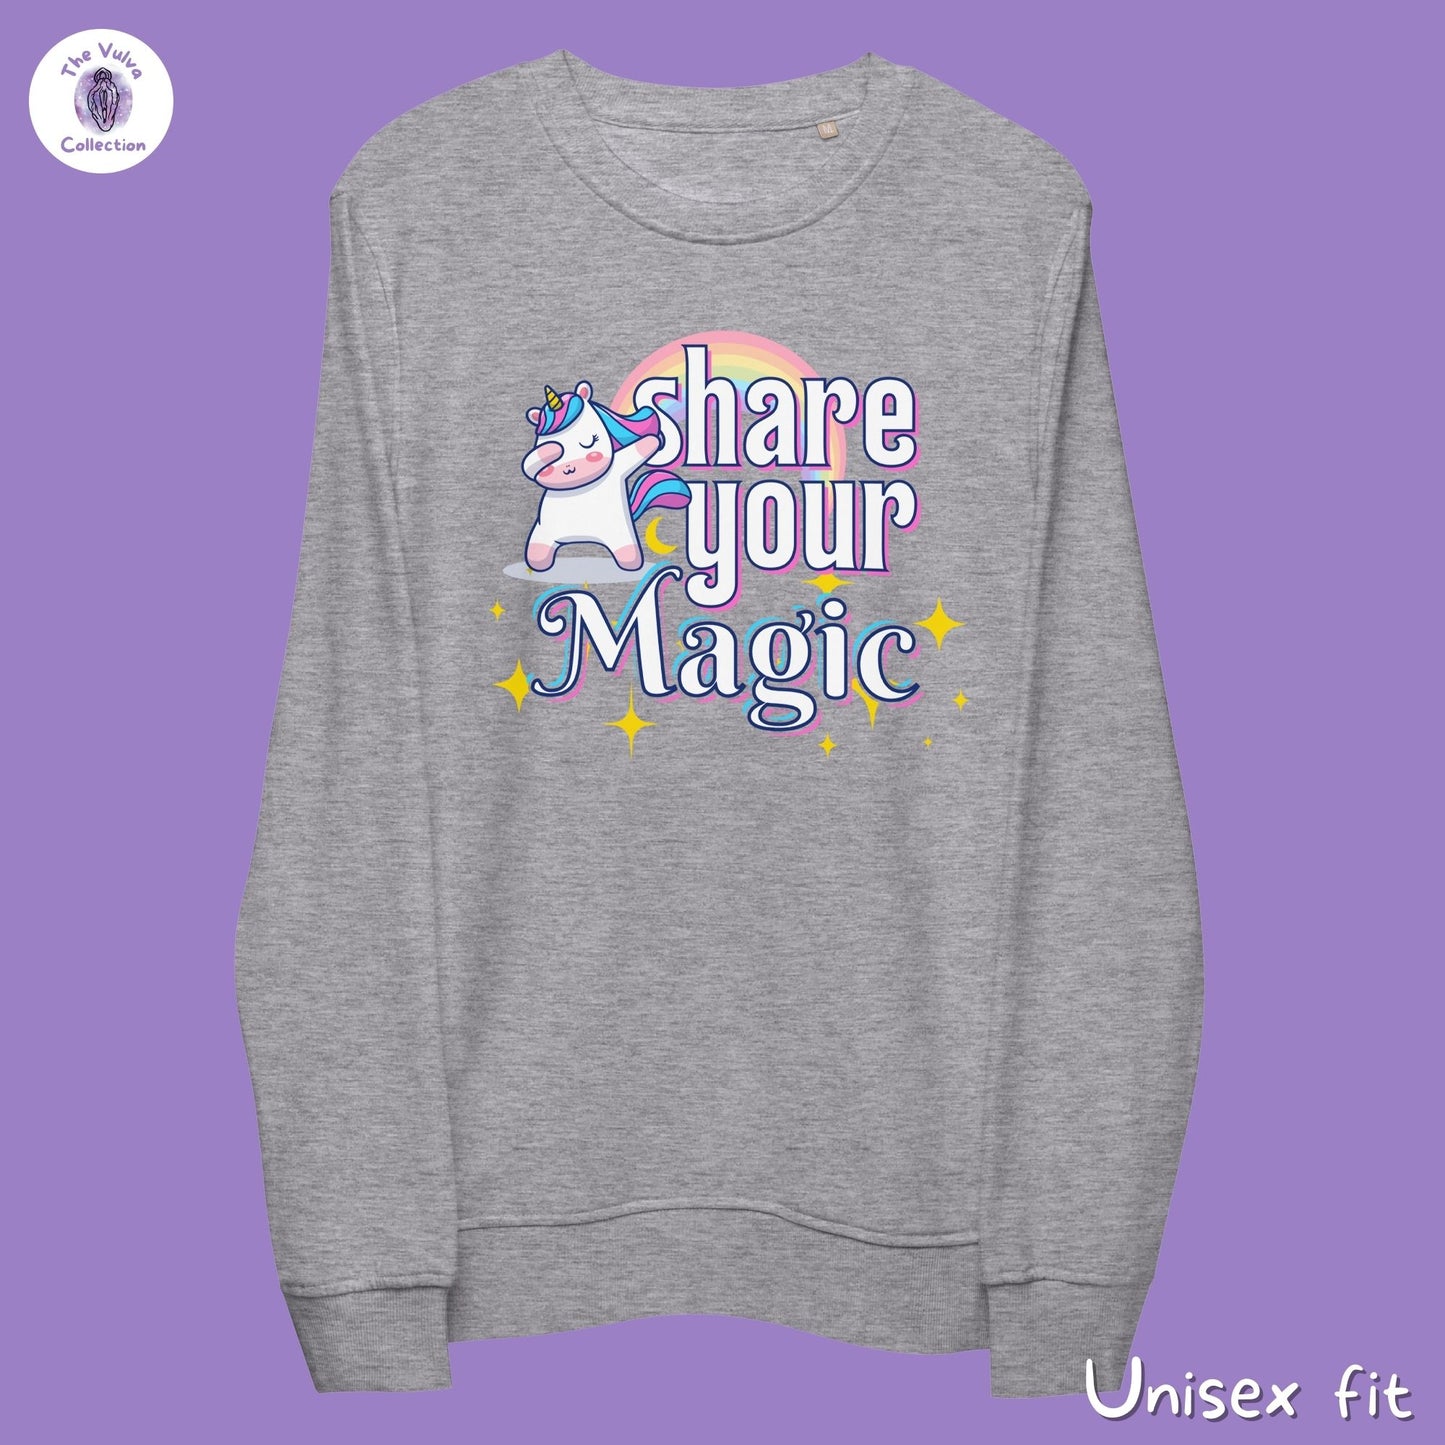 Share Your Magic Unicorn Unisex Fit Eco Sweatshirt